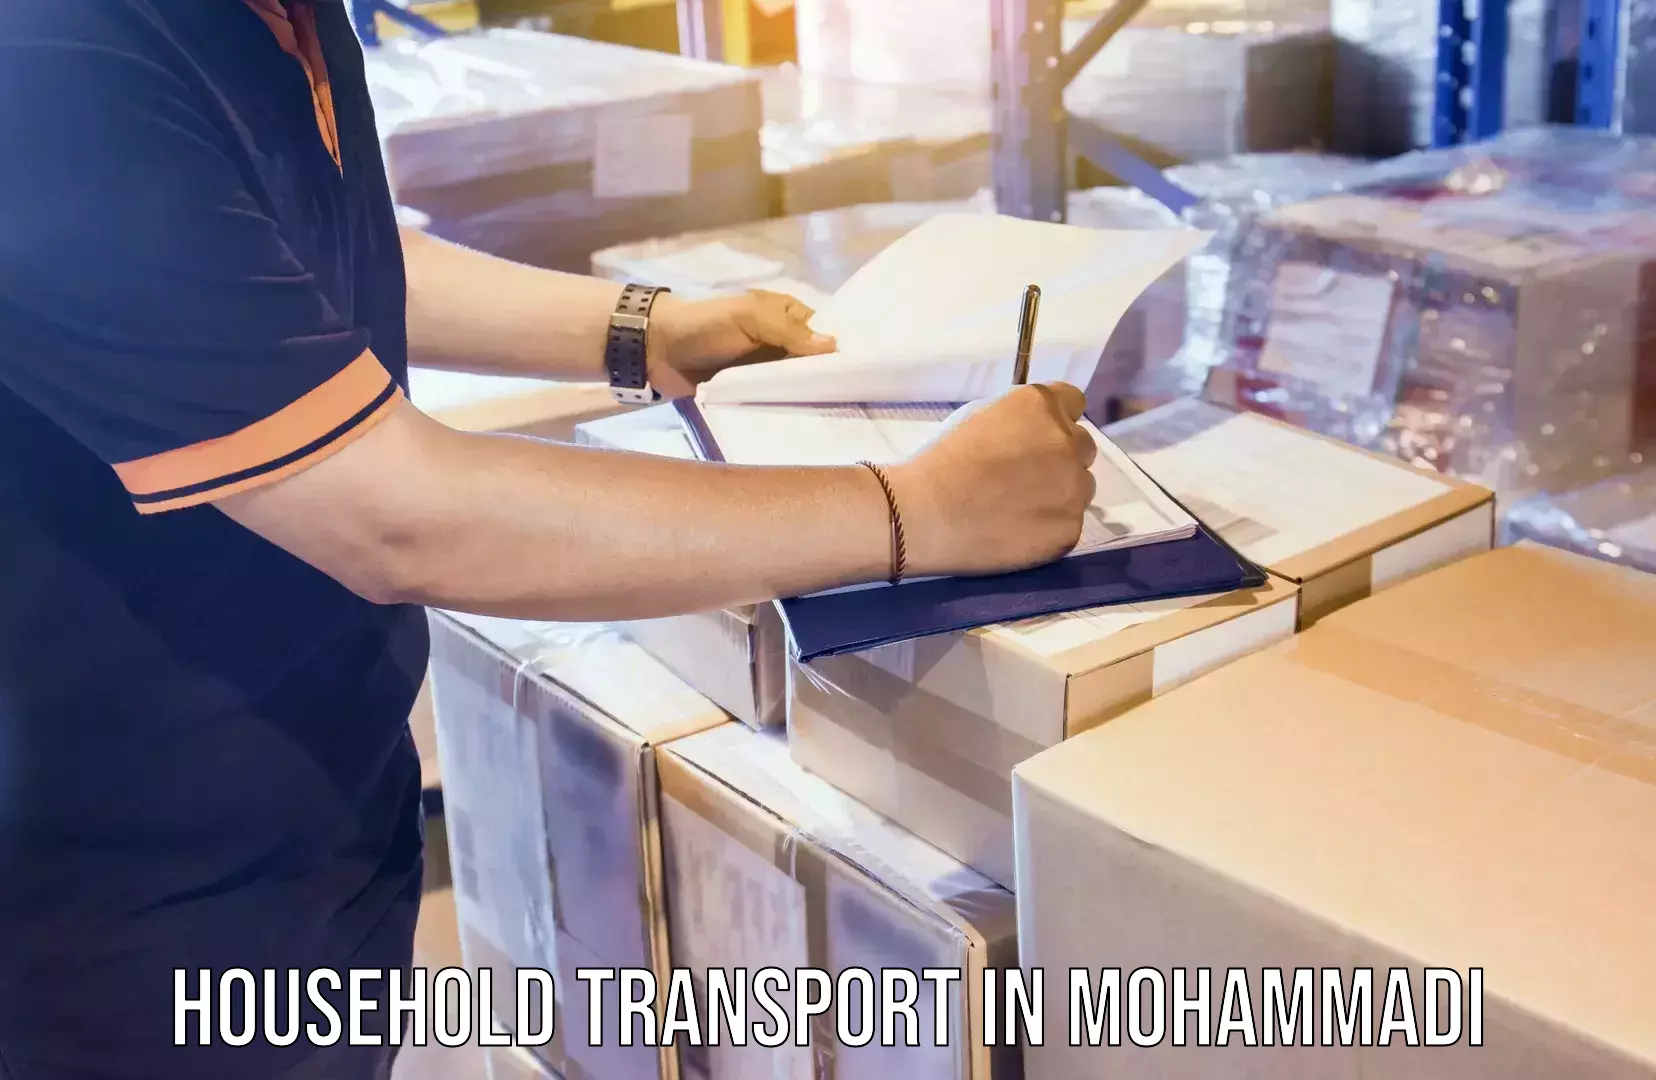 Efficient furniture transport in Mohammadi